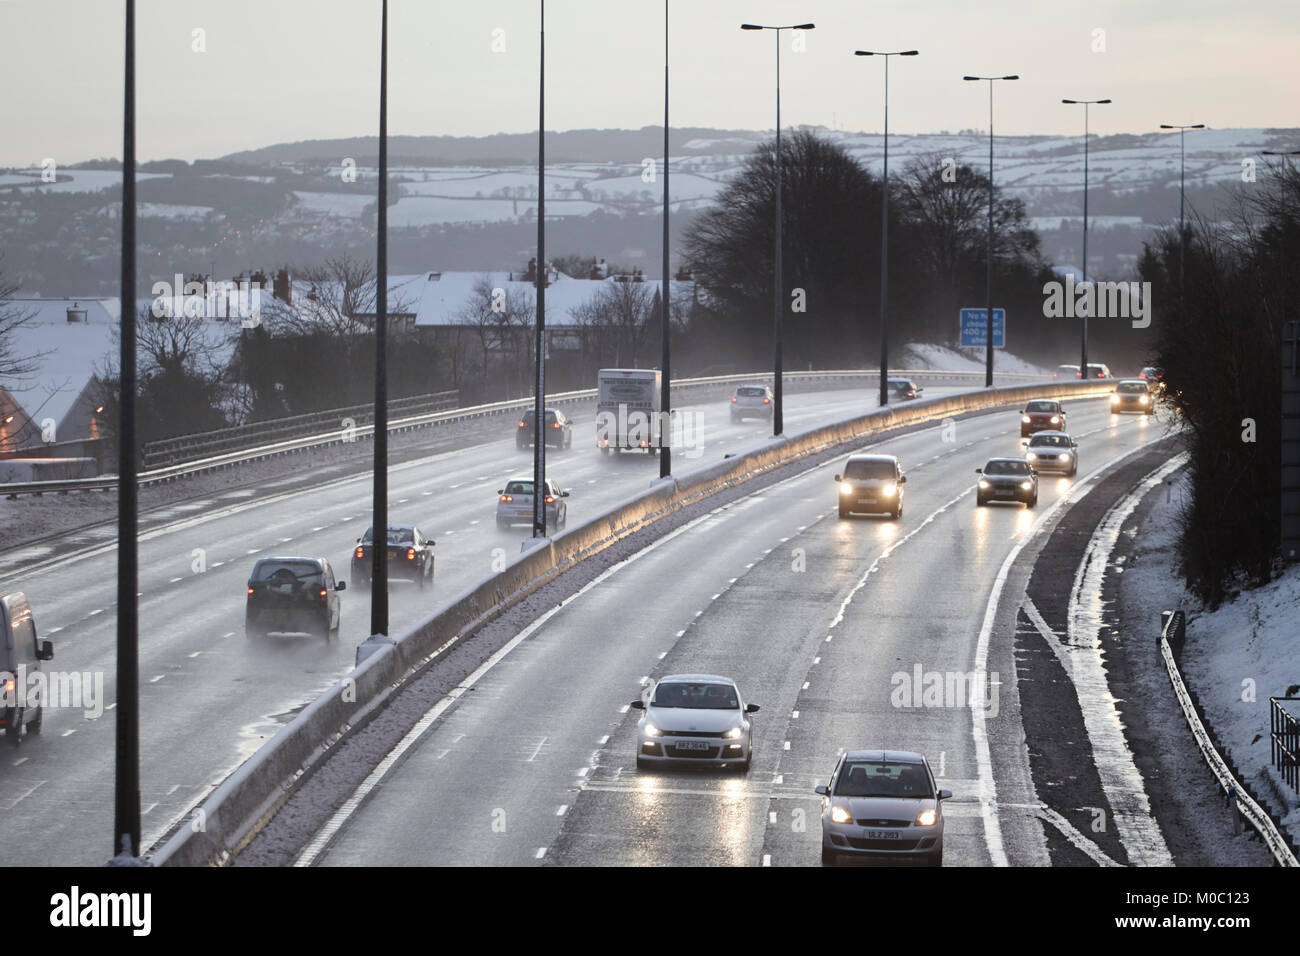 Les voitures qui circulent le long de l'autoroute salé grincées newtownabbey en Irlande du Nord Banque D'Images